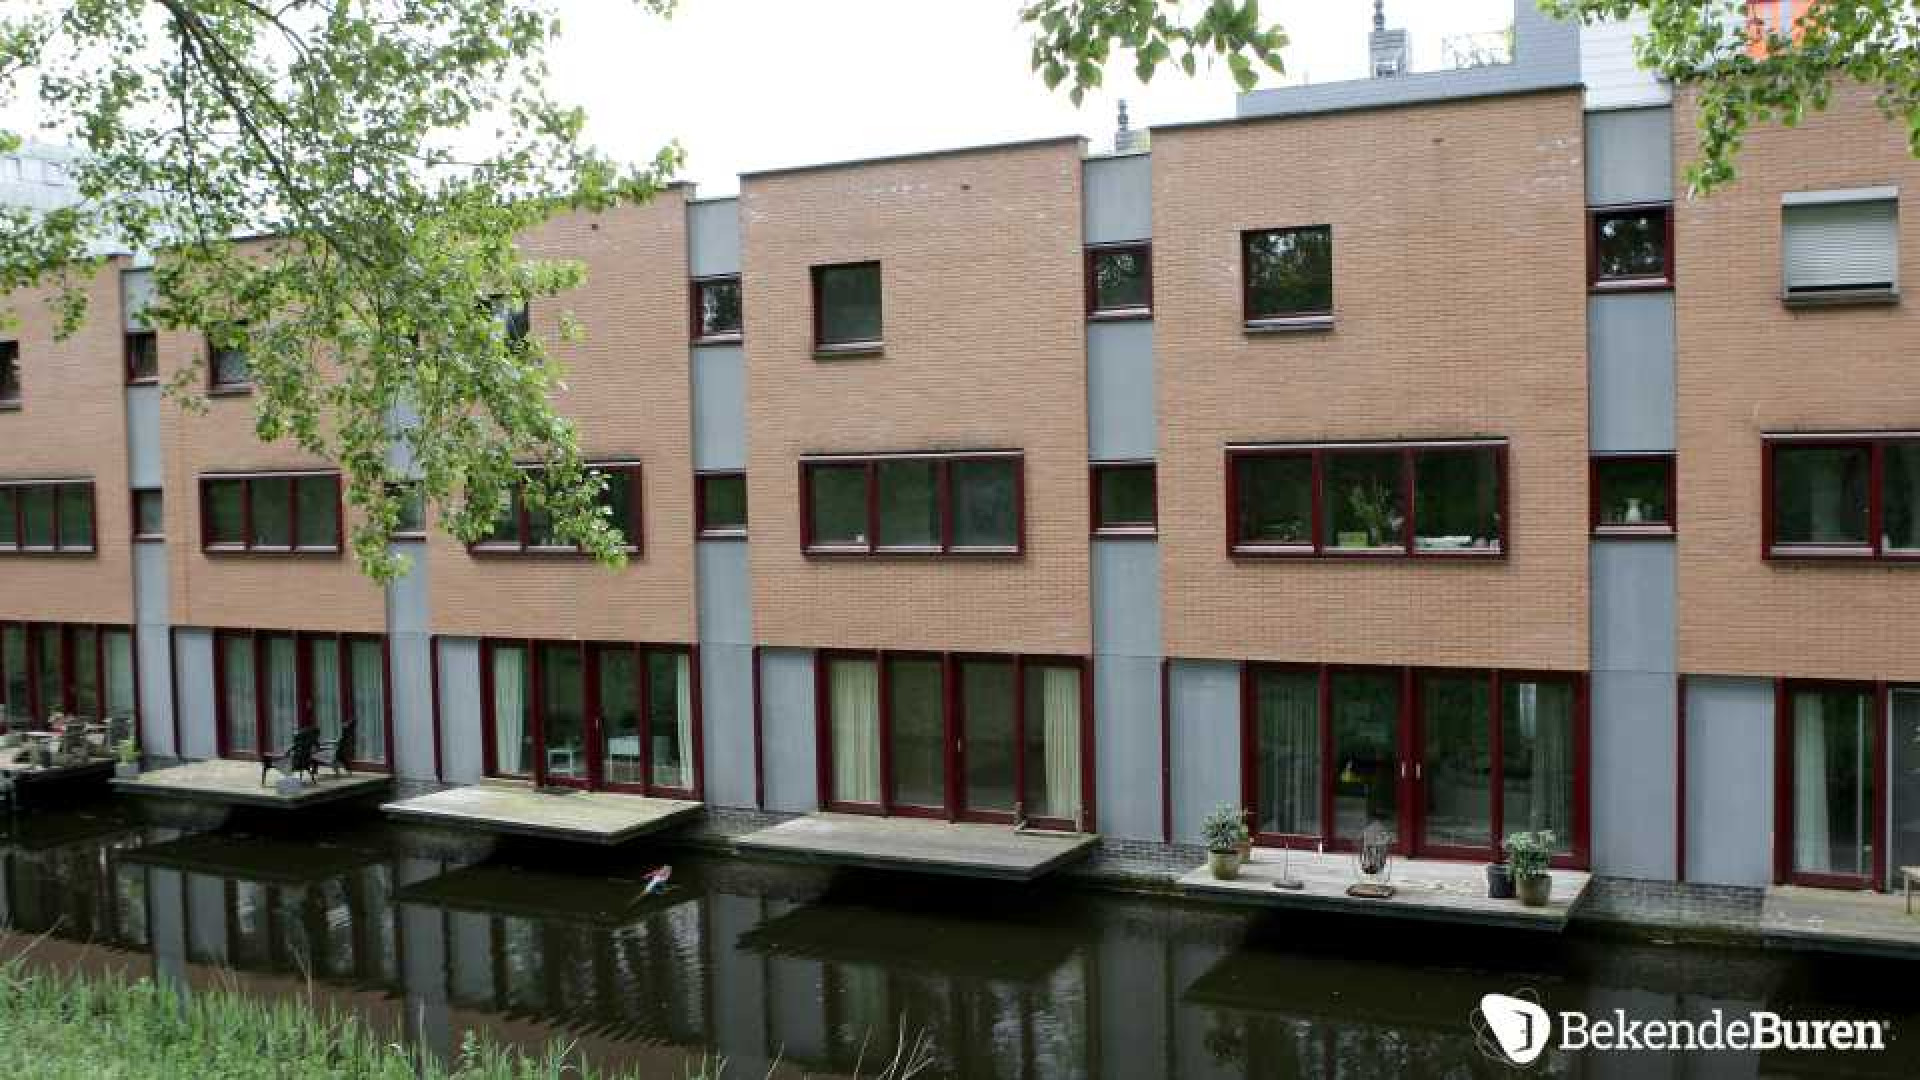 Jan Kooijman verruilt Rotterdam voor Amsterdam. Zie foto's